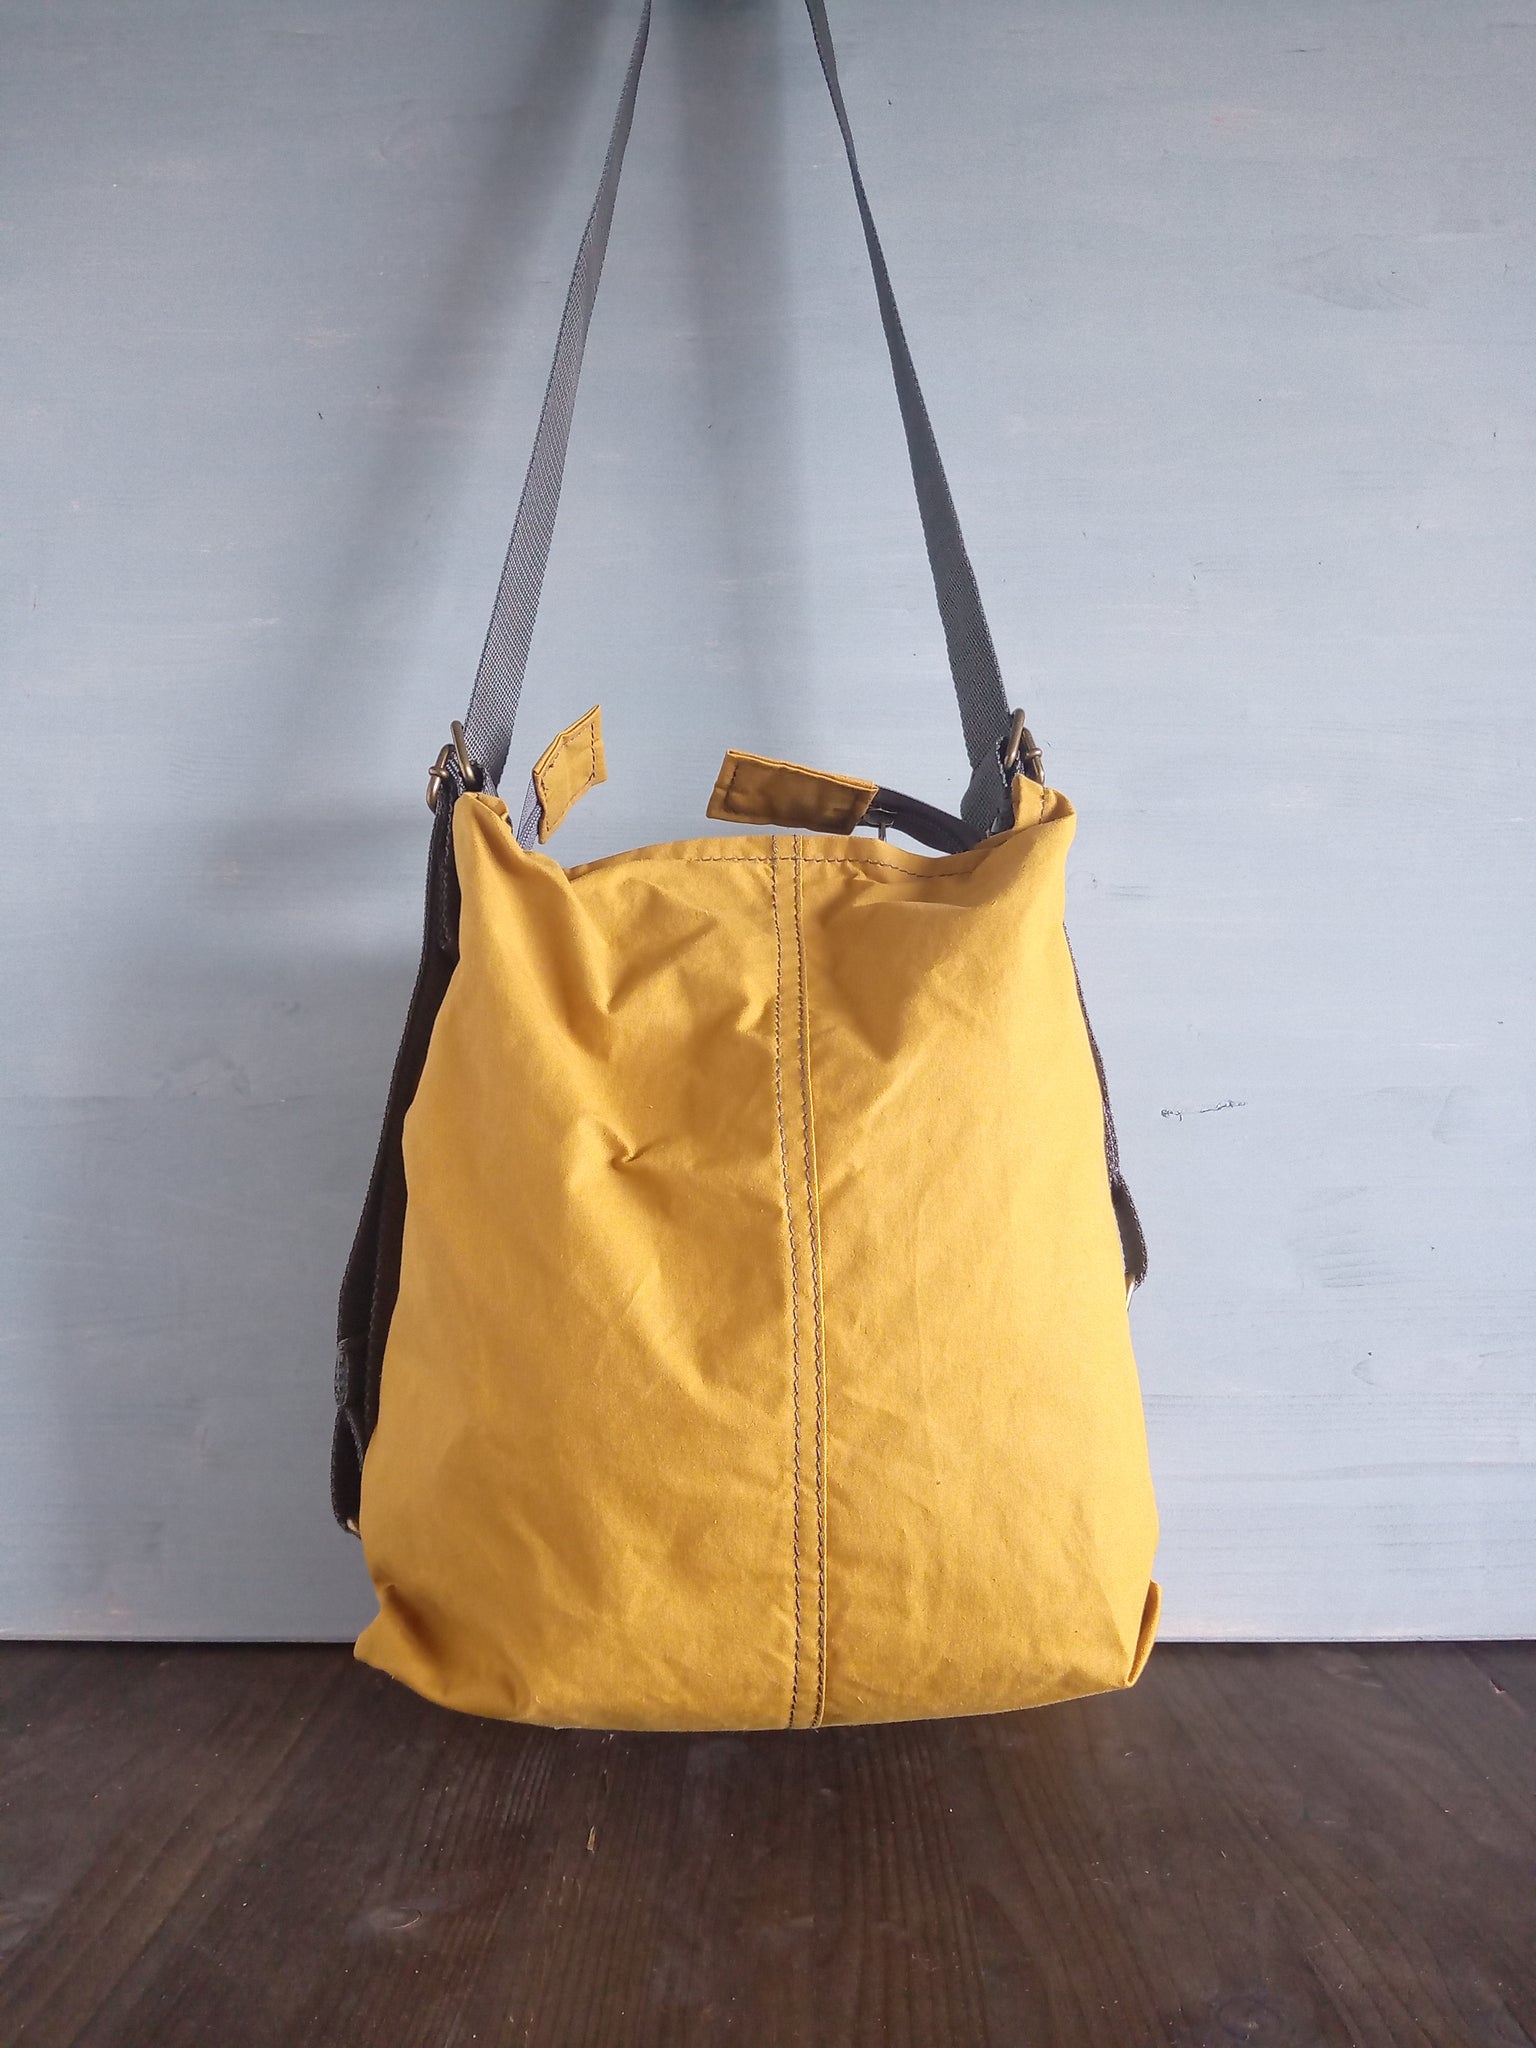 Buy CONVERTIBLE Backpack, BLACK Shoulder Bag, Leather BACKPACK Handbag,  Leather Hobo Bag, Crossbody Leather Bag, Black Purse Online in India - Etsy